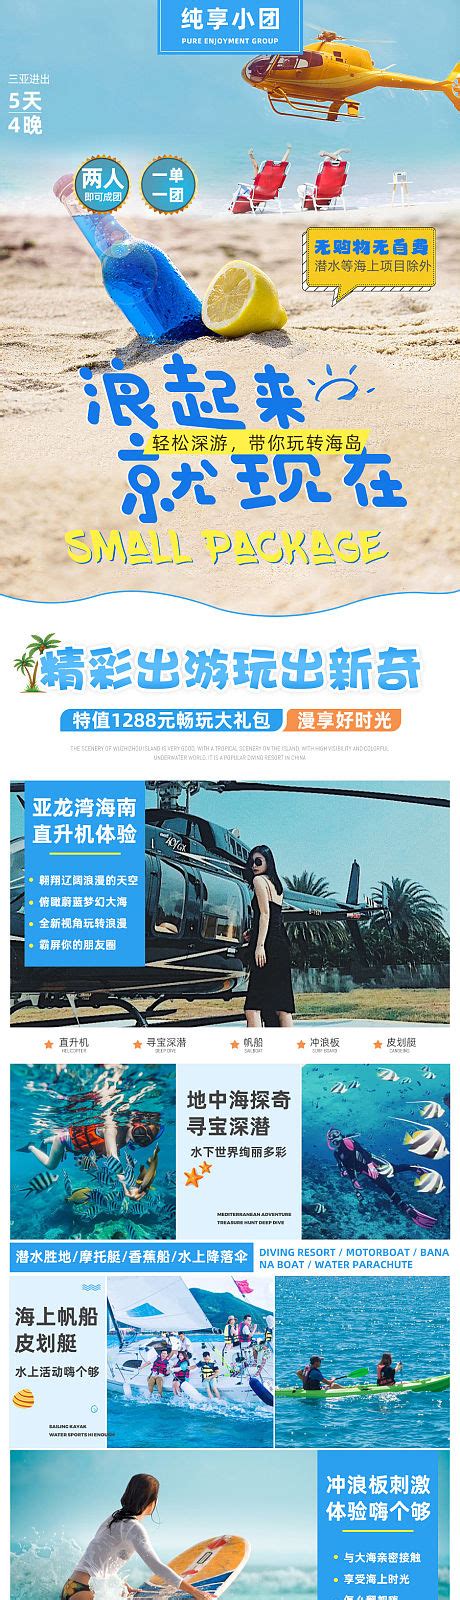 三亚旅游度假海景定制自由行电商详情页PSD电商设计素材海报模板免费下载-享设计